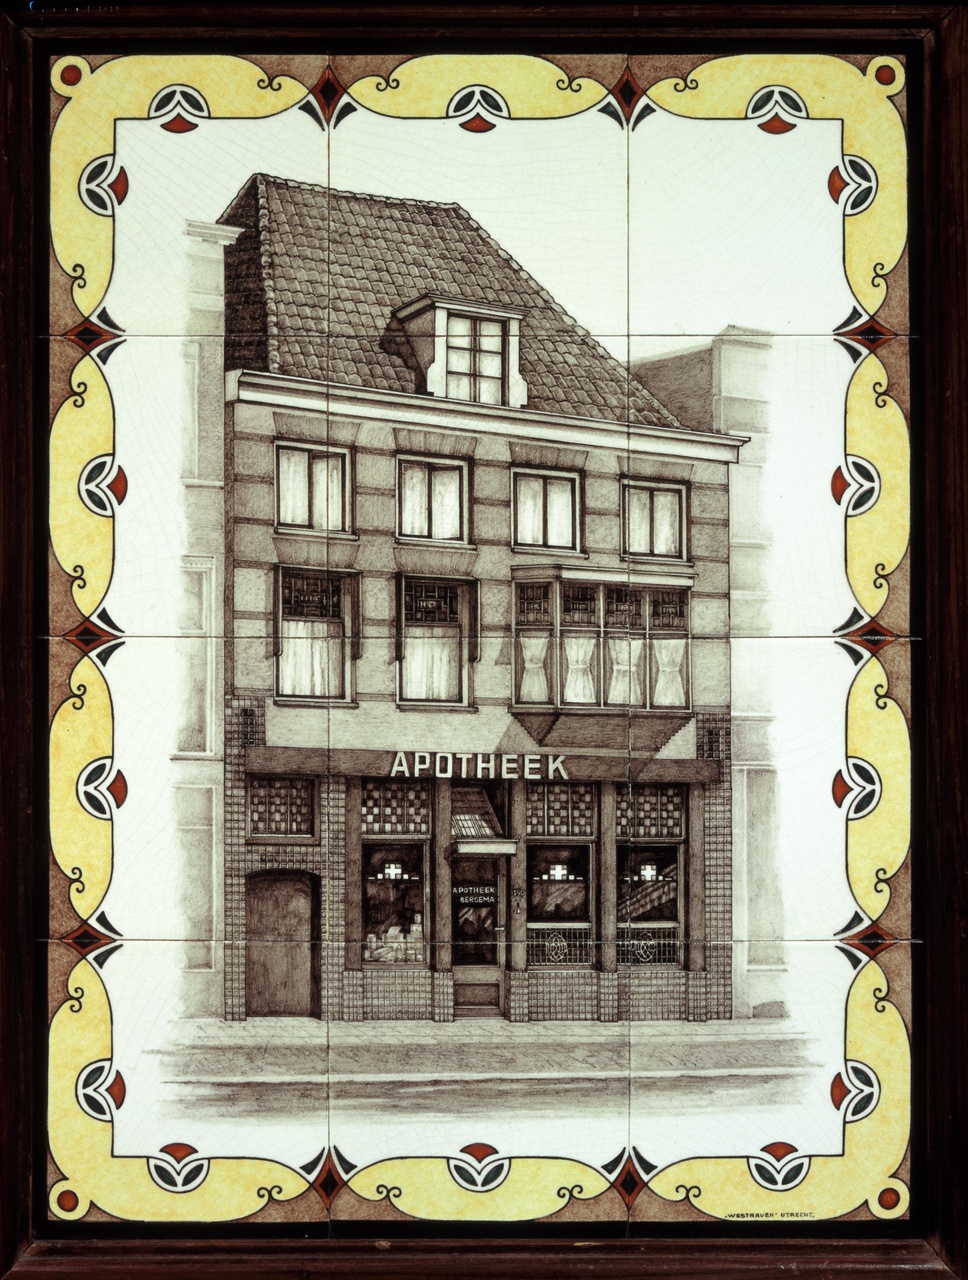 Tegeltableau met afbeelding van apotheek Bergema te Utrecht